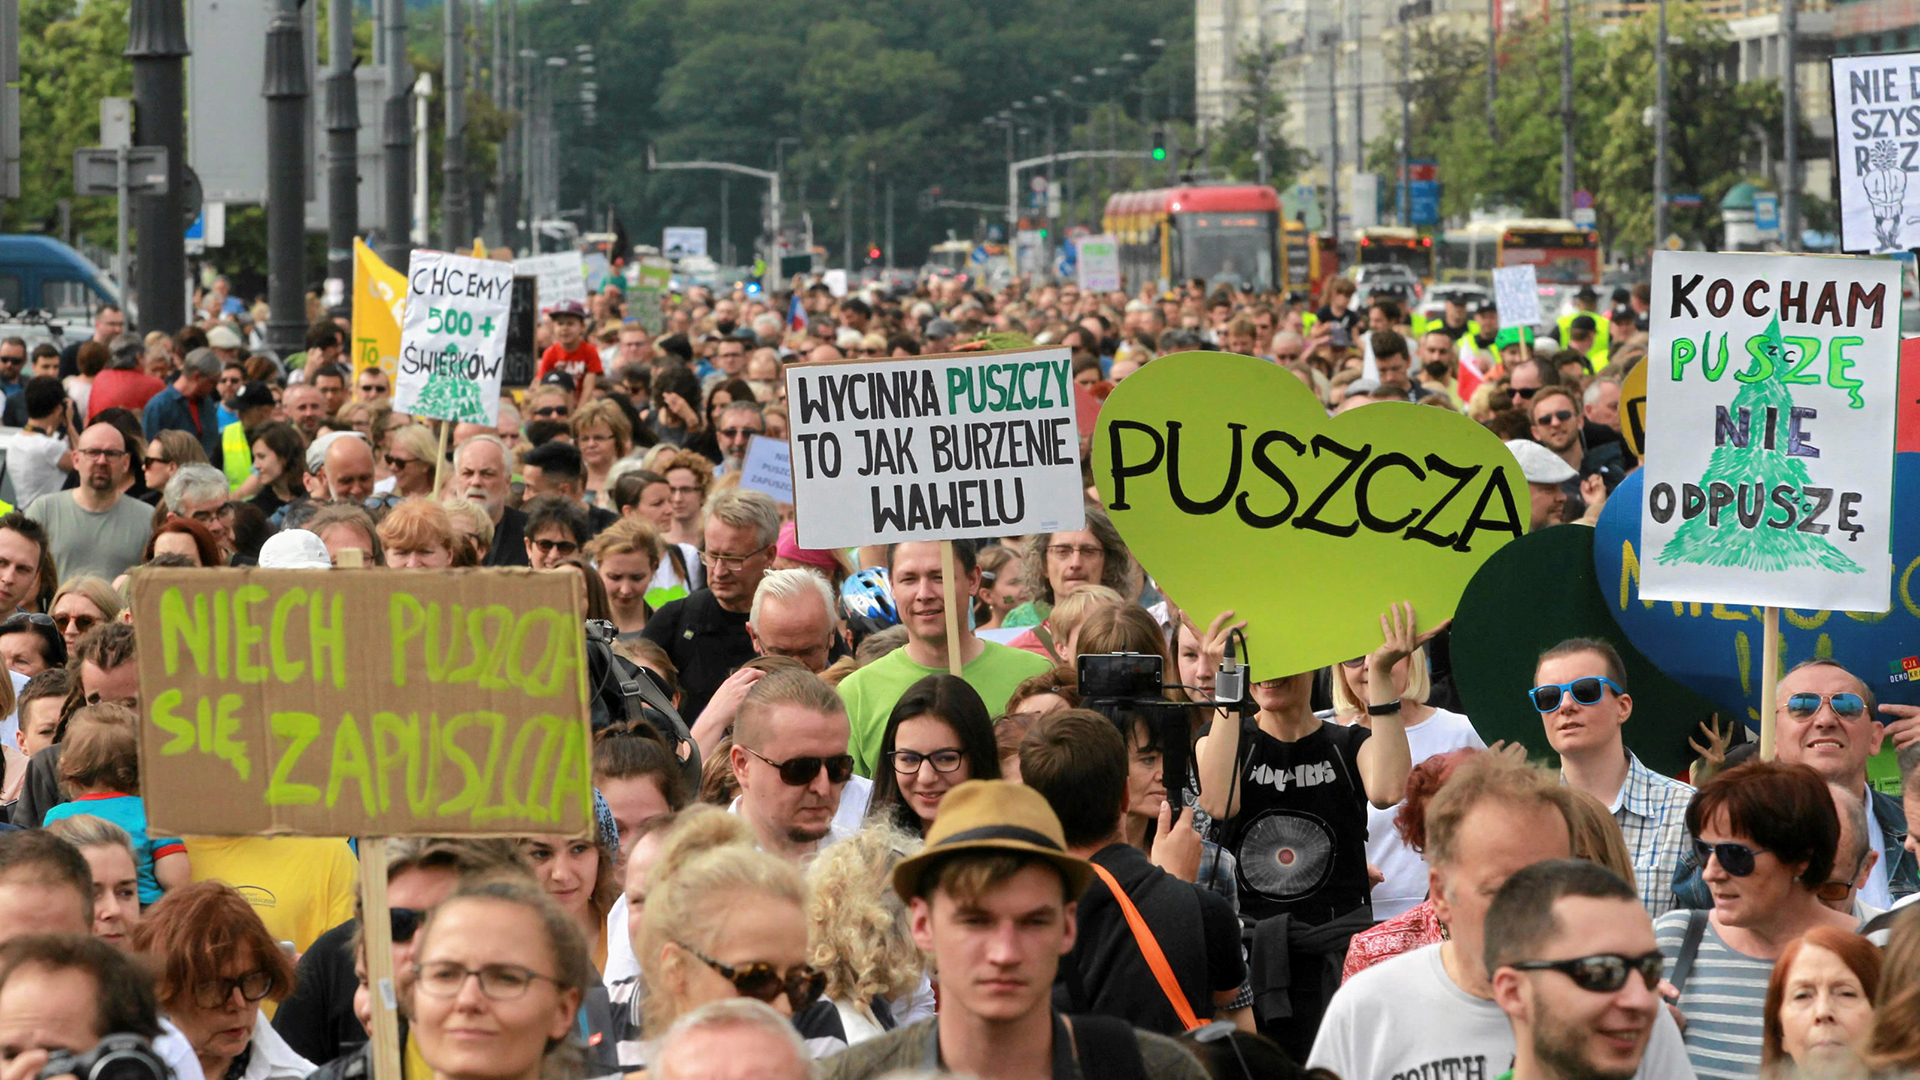 Proteste gegen die Rodung im Bialowieza-Urwald | REUTERS